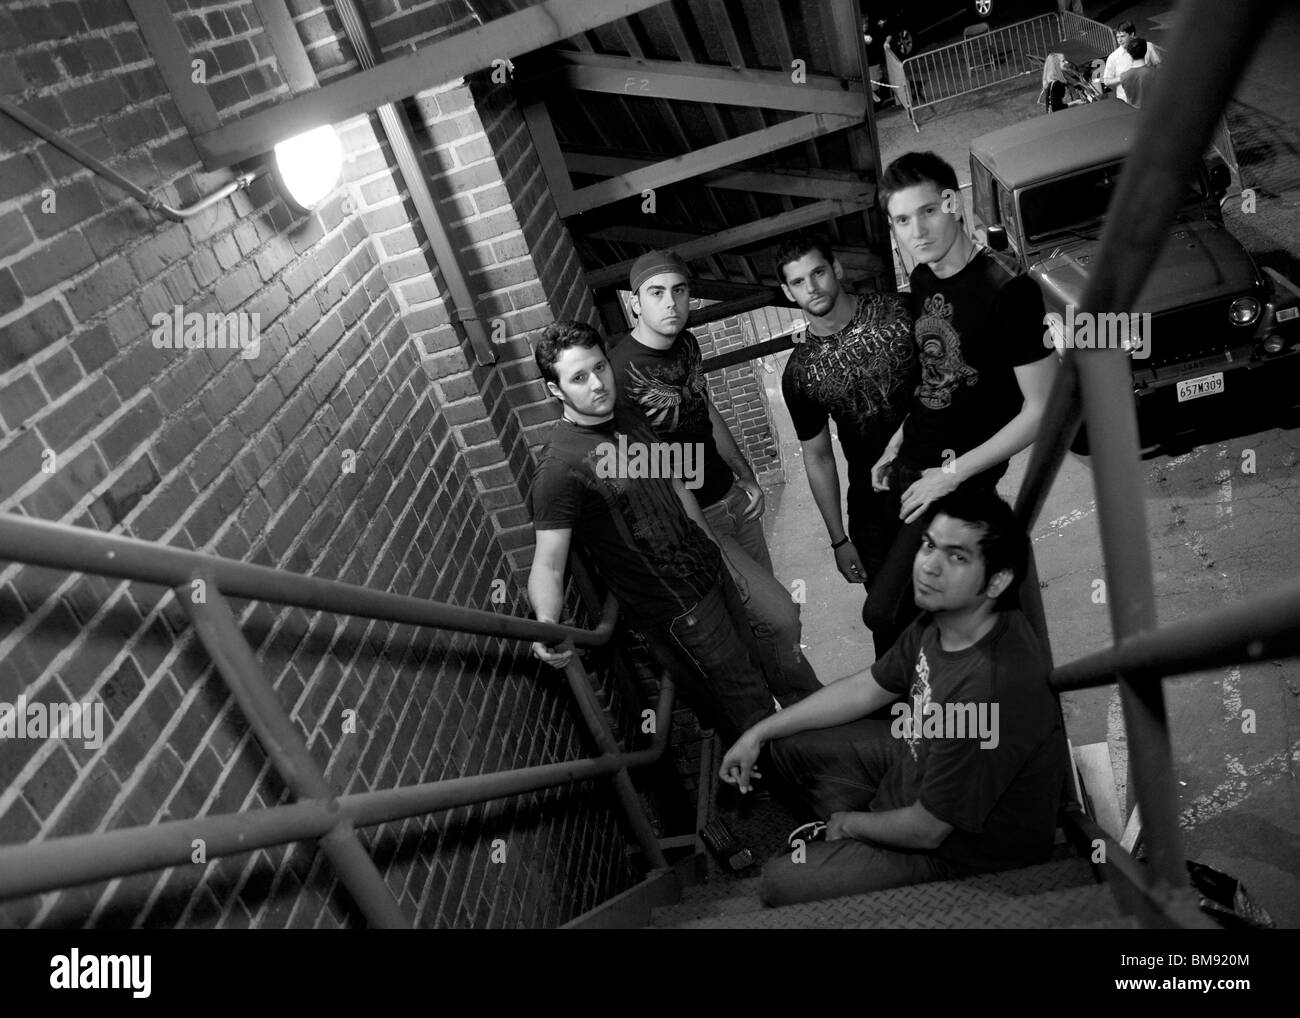 Rock band membri promo photo su scale antincendio Foto Stock